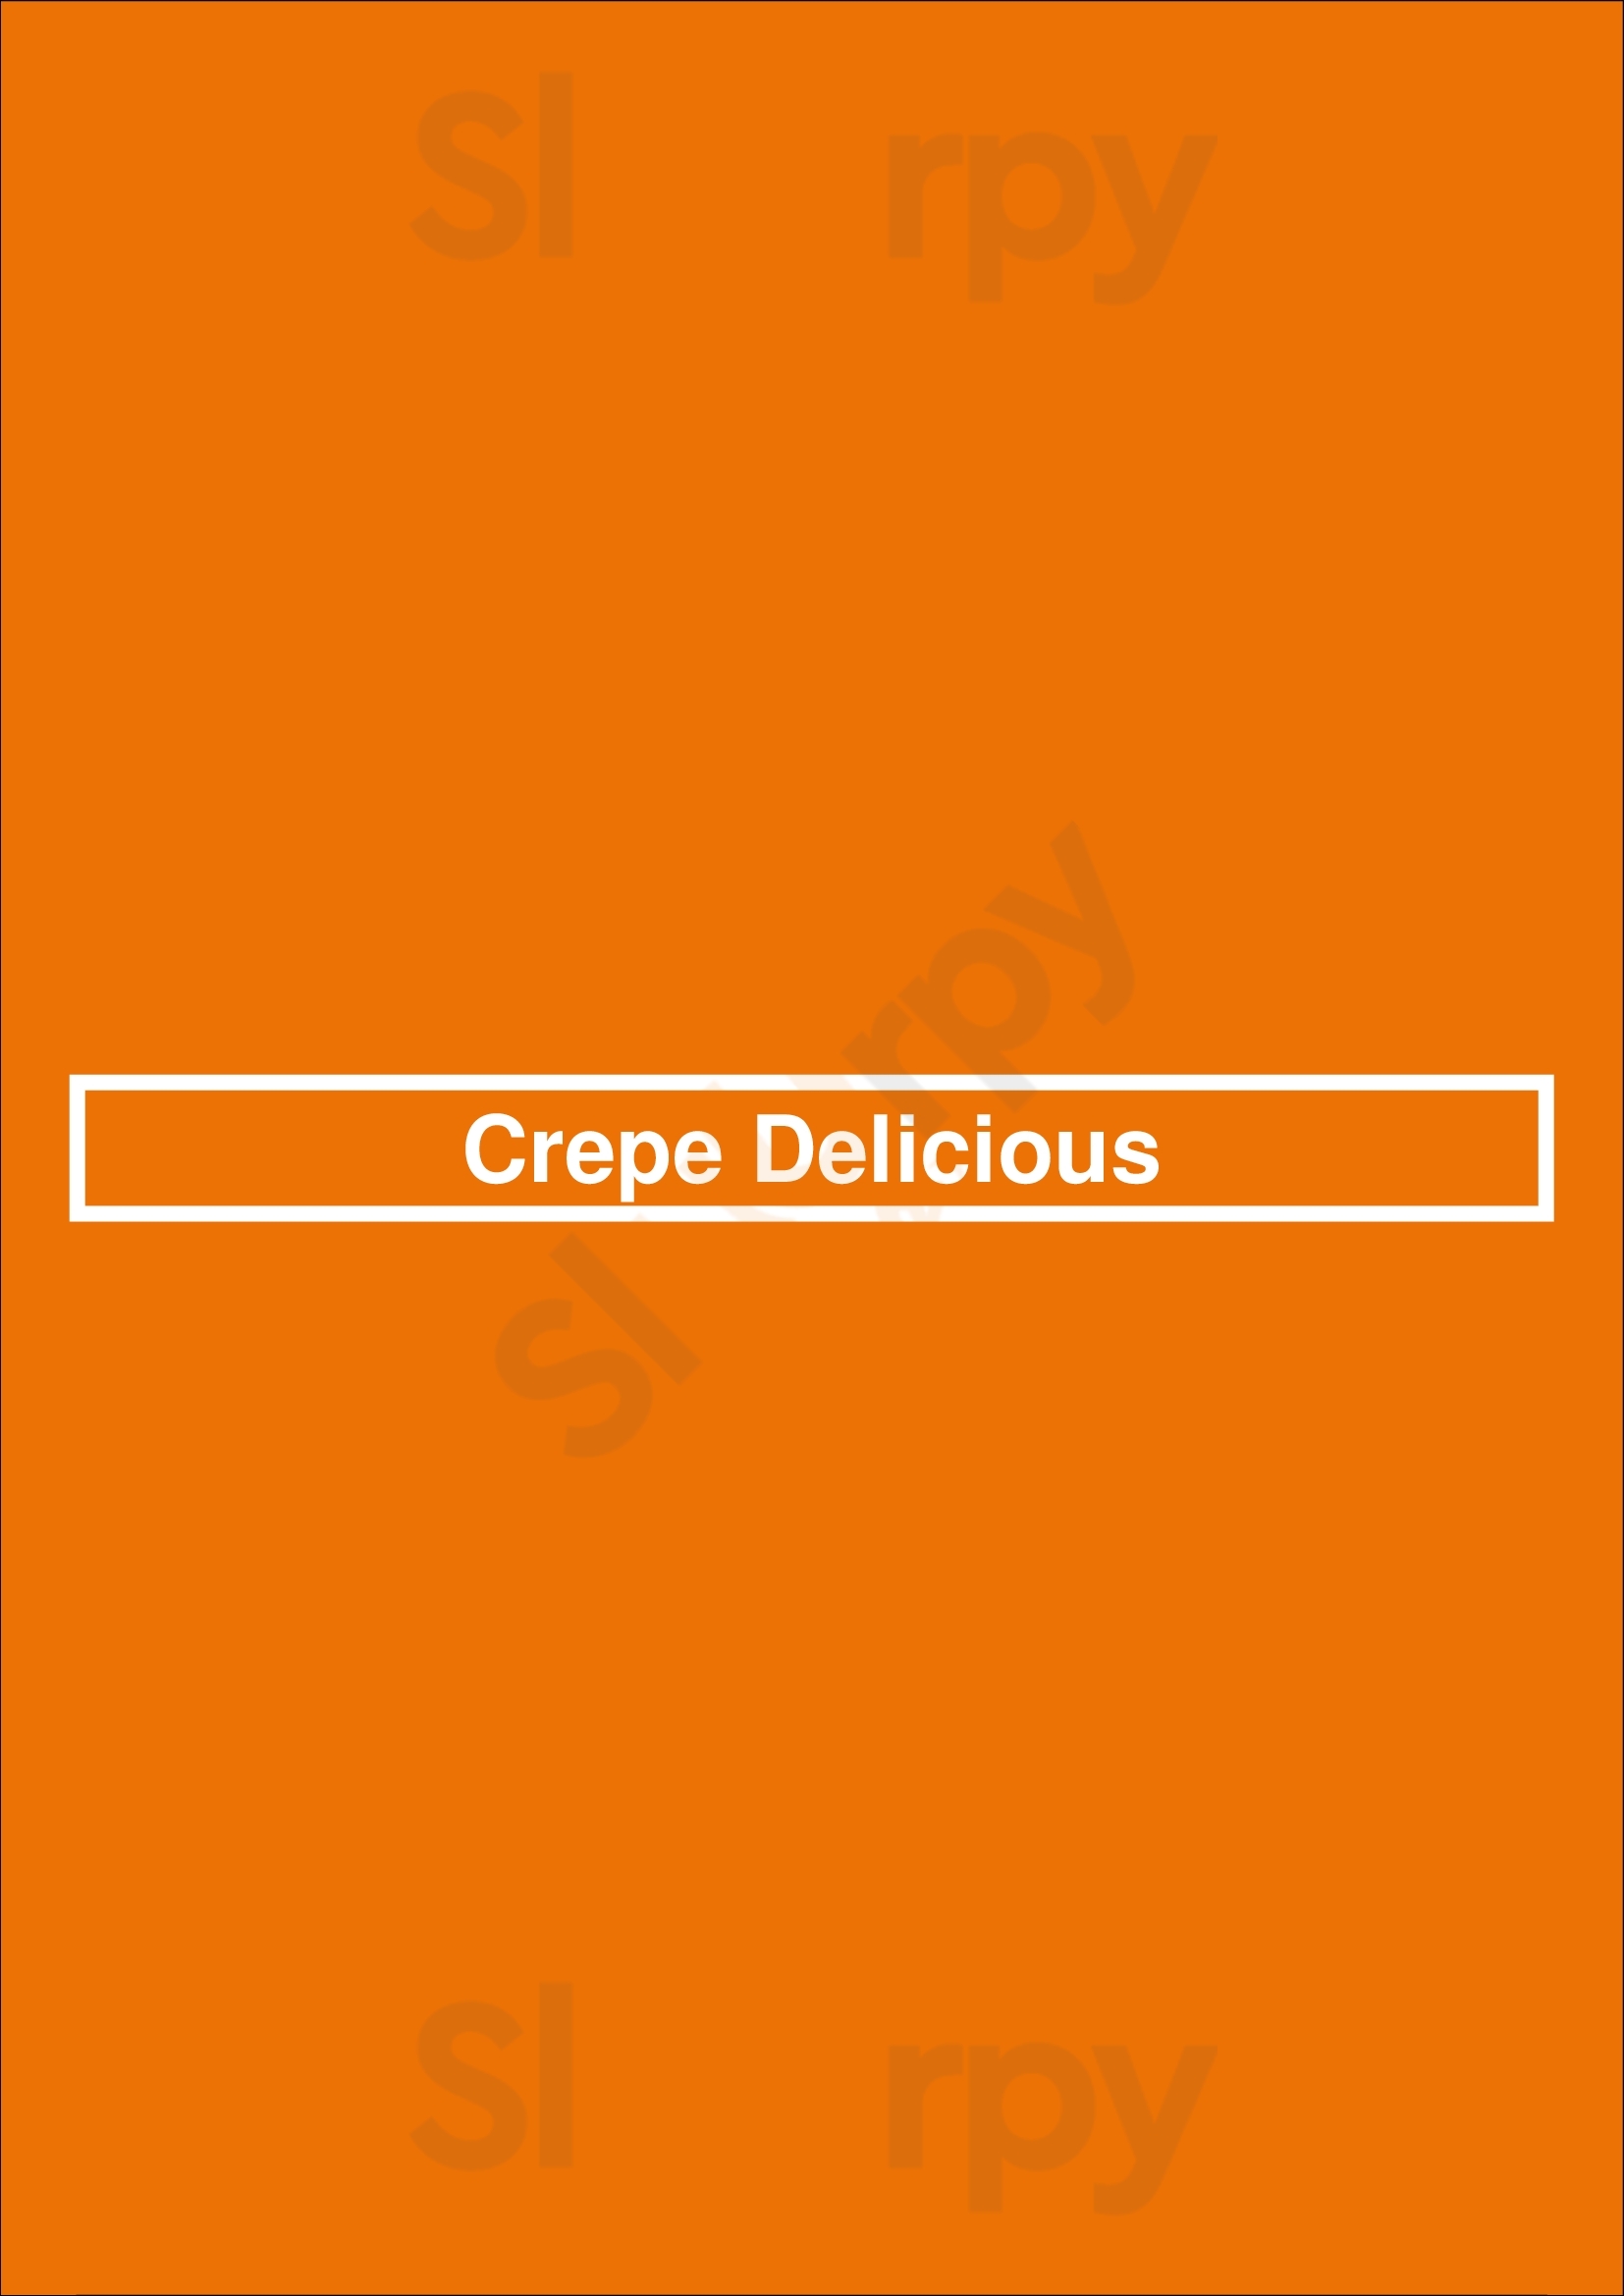 Crepe Delicious Burnaby Menu - 1